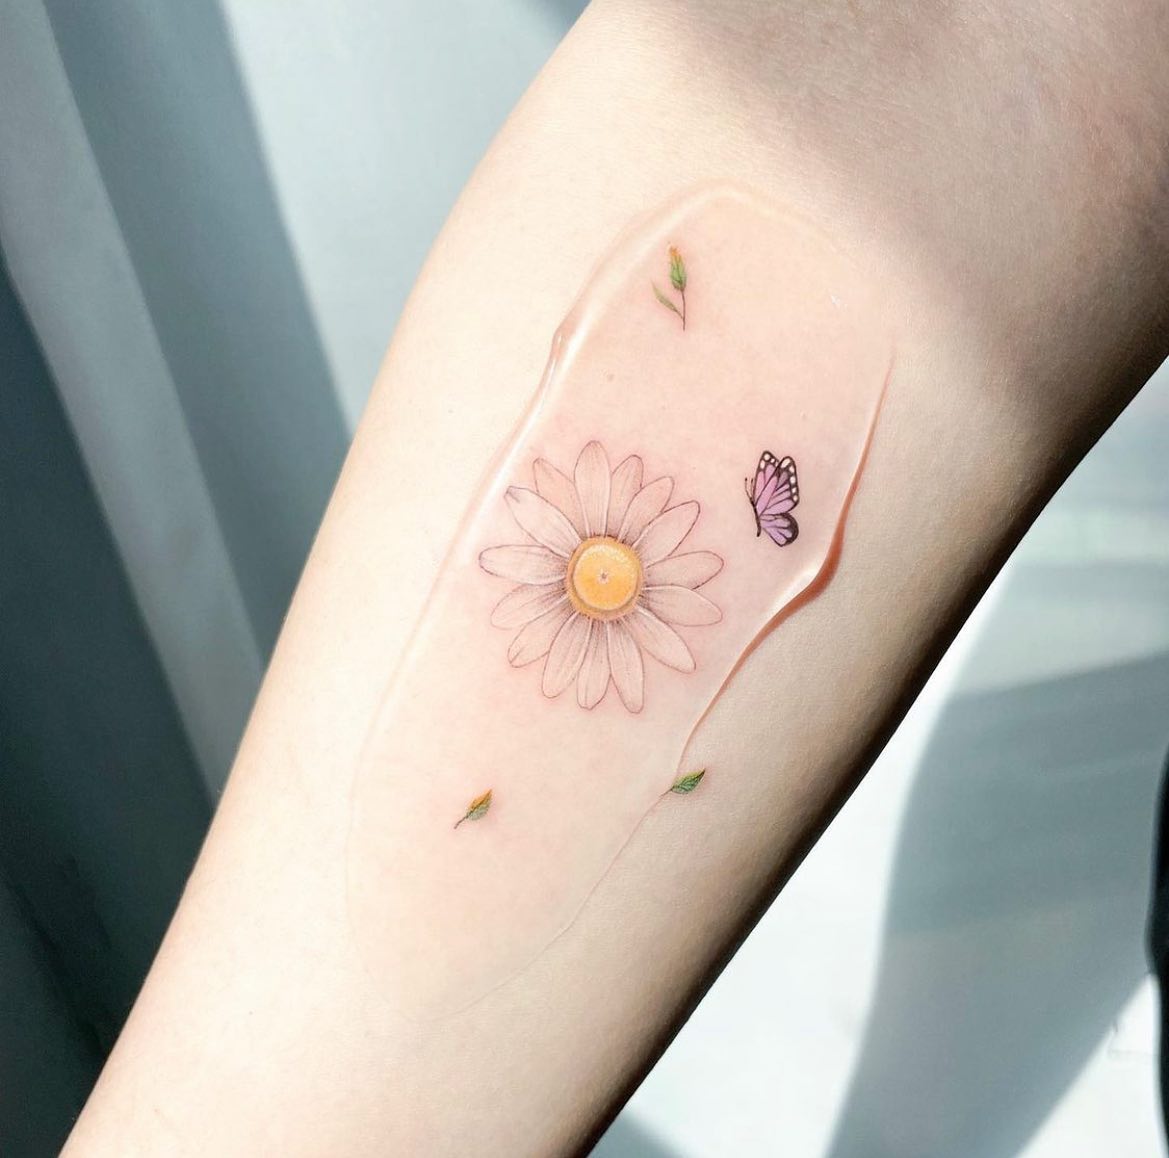 26 April Birth Flower Tattoo Ideas